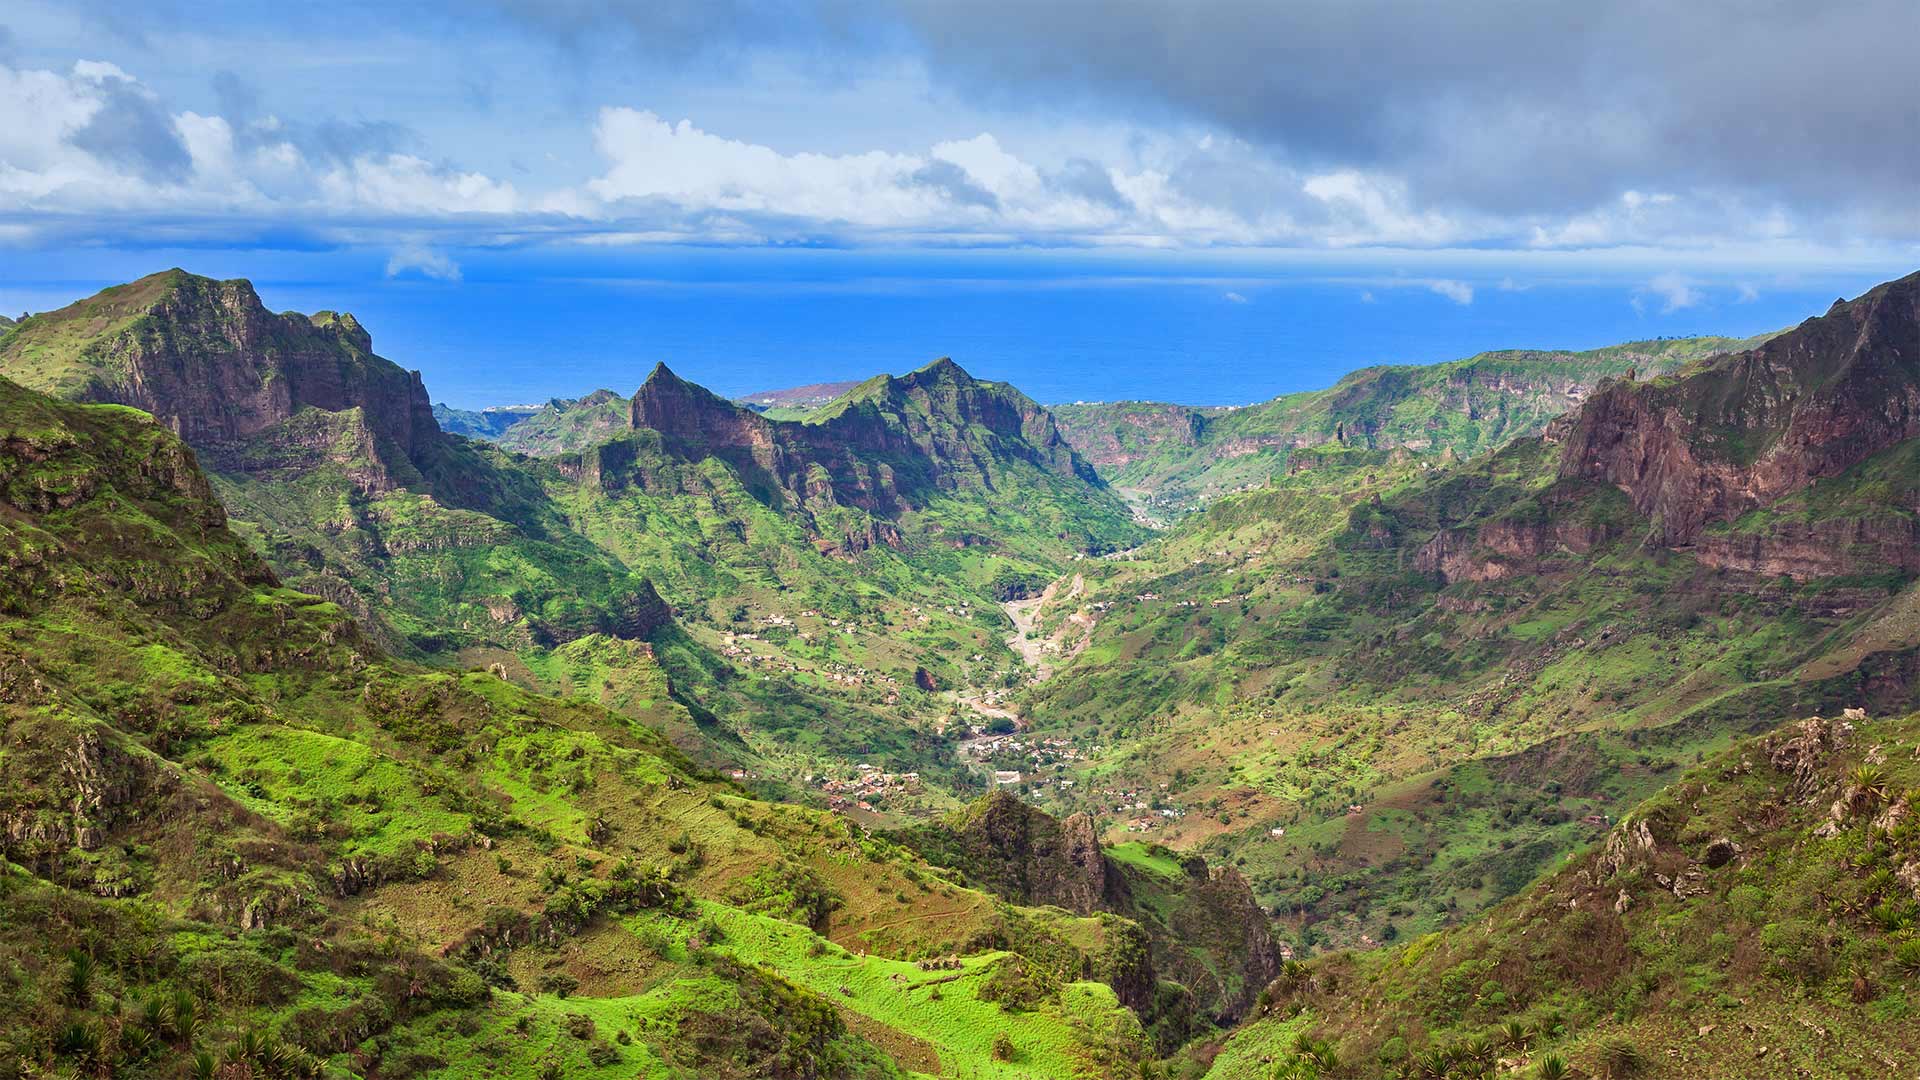 Serra da Malagueta mountains on Santiago Island, Cabo Verde - Samuel Borges Photography/Shutterstock)